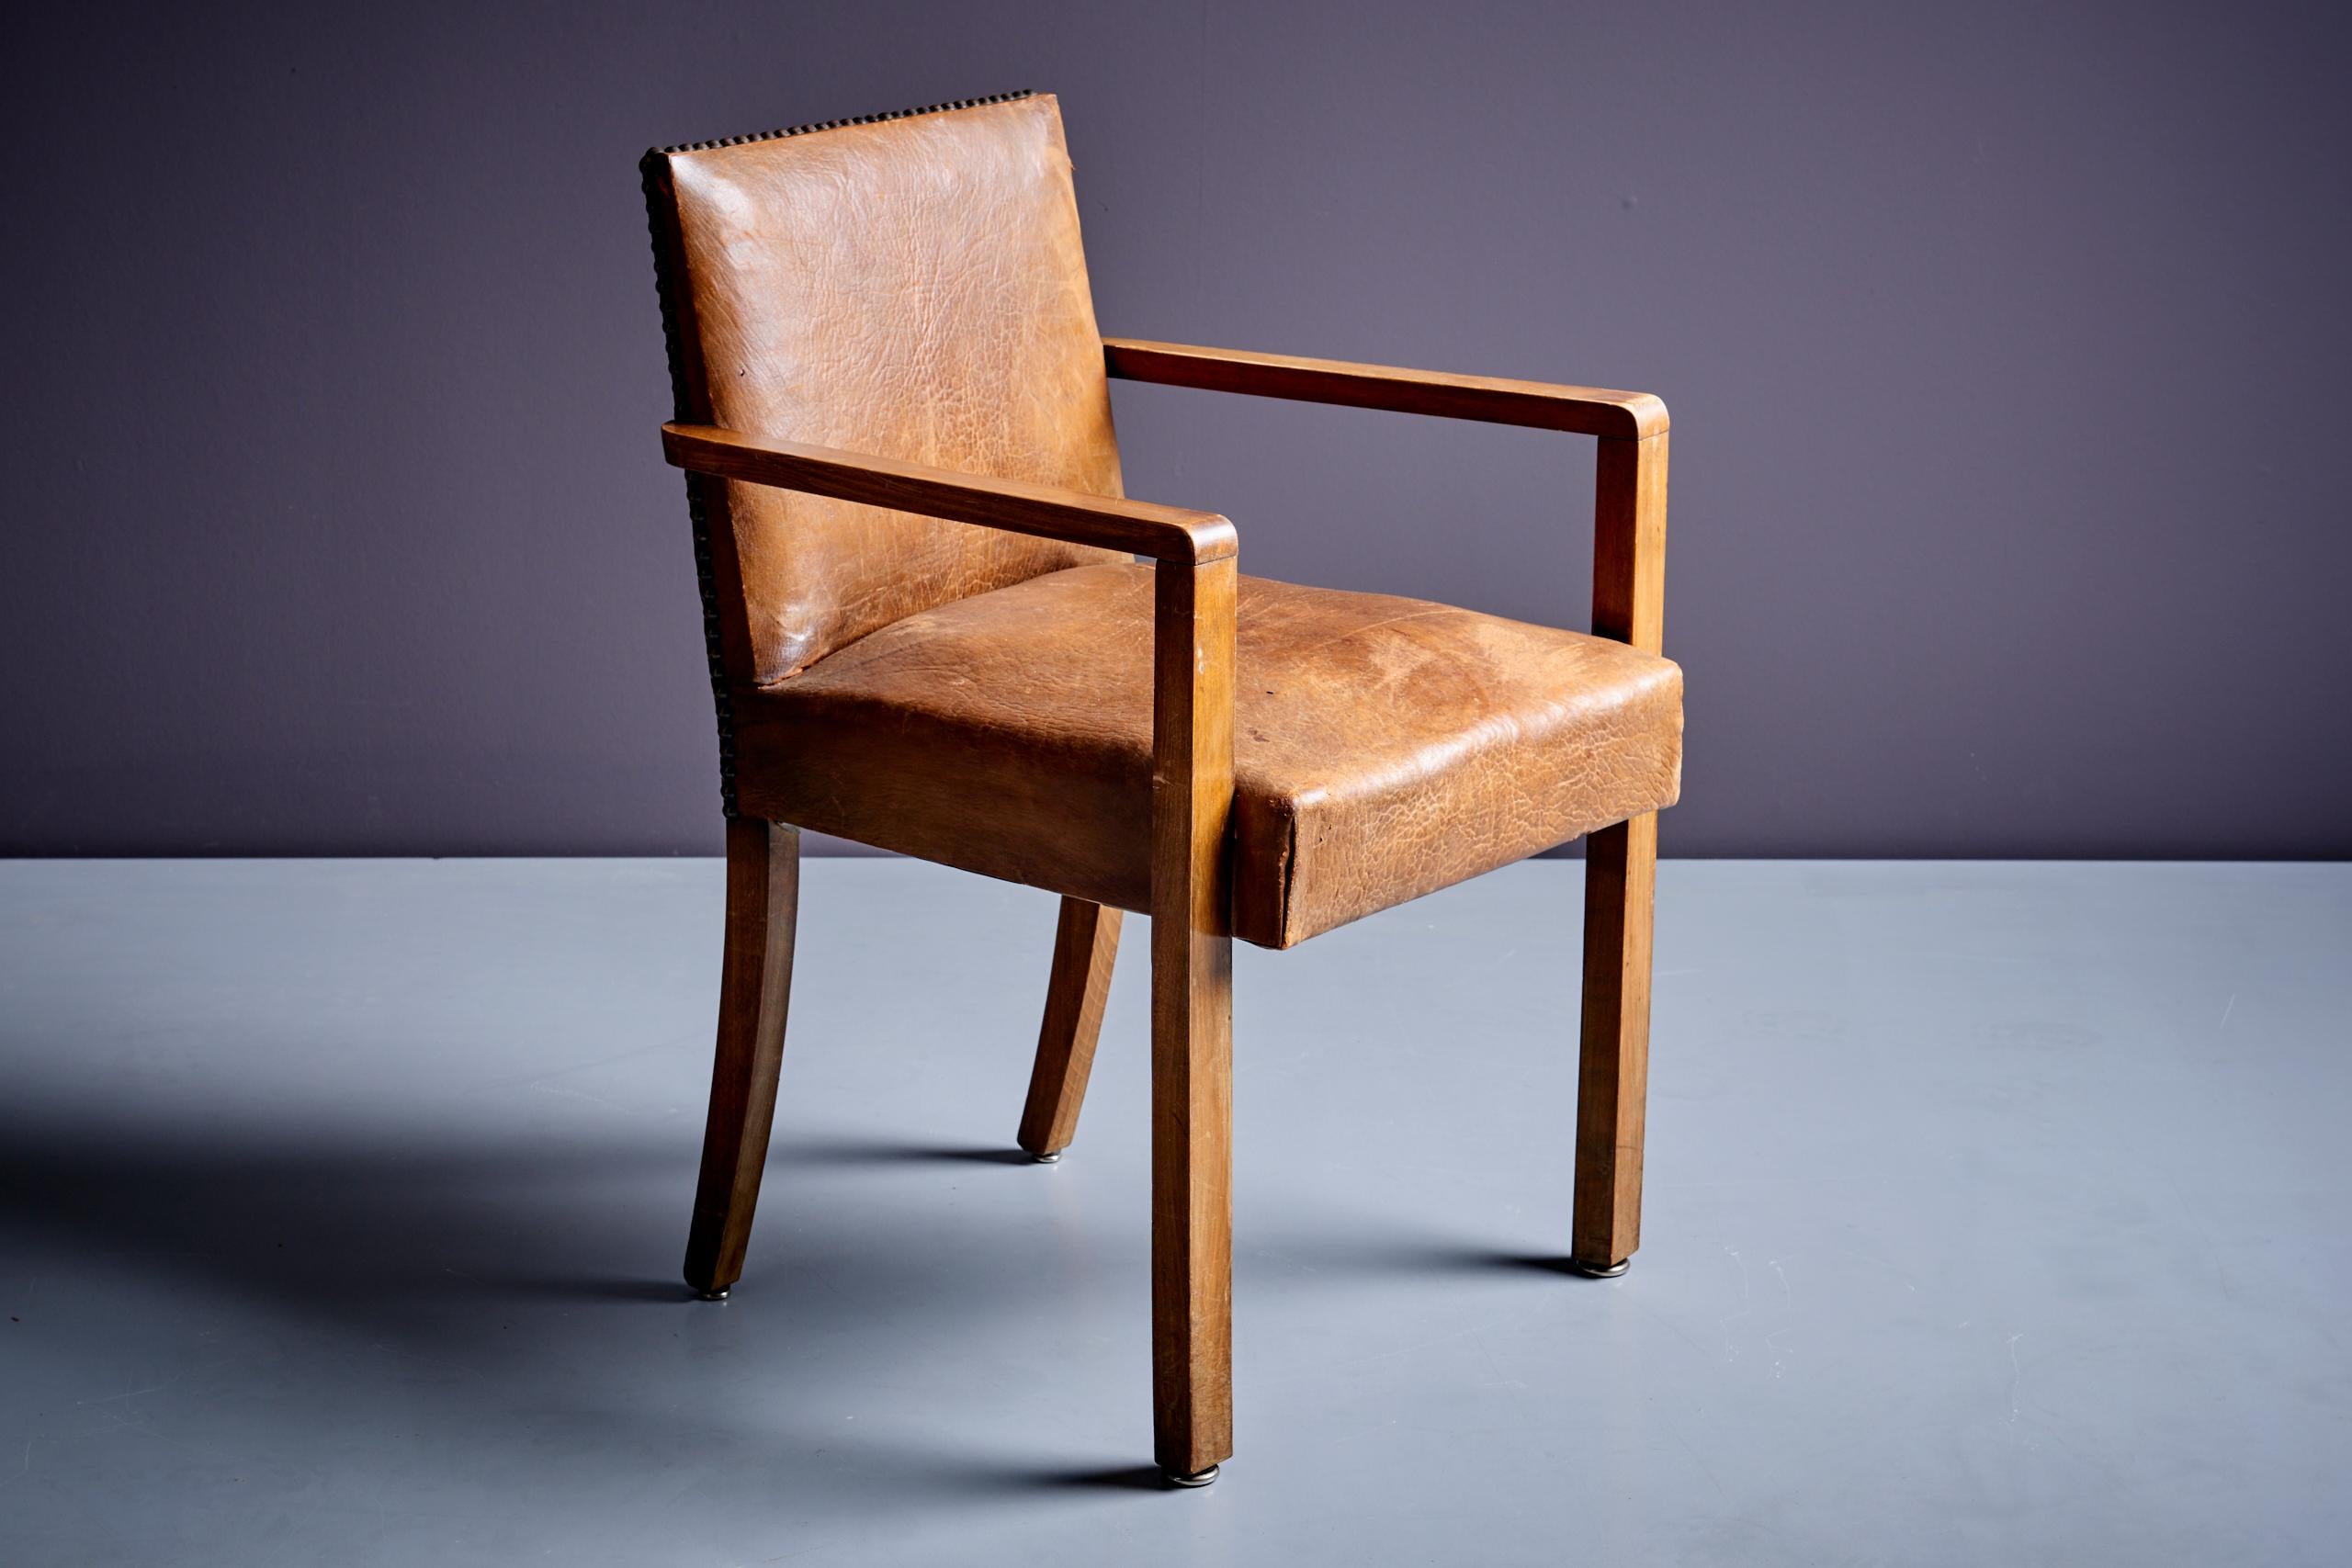 Fauteuil Art Déco attribué à Francis Jourdain, France - années 1940 en bon état d'origine. Avec structure en Beeche et assise en simili cuir marron. Nous offrons un service de rembourrage sur demande. Demandez un devis. 